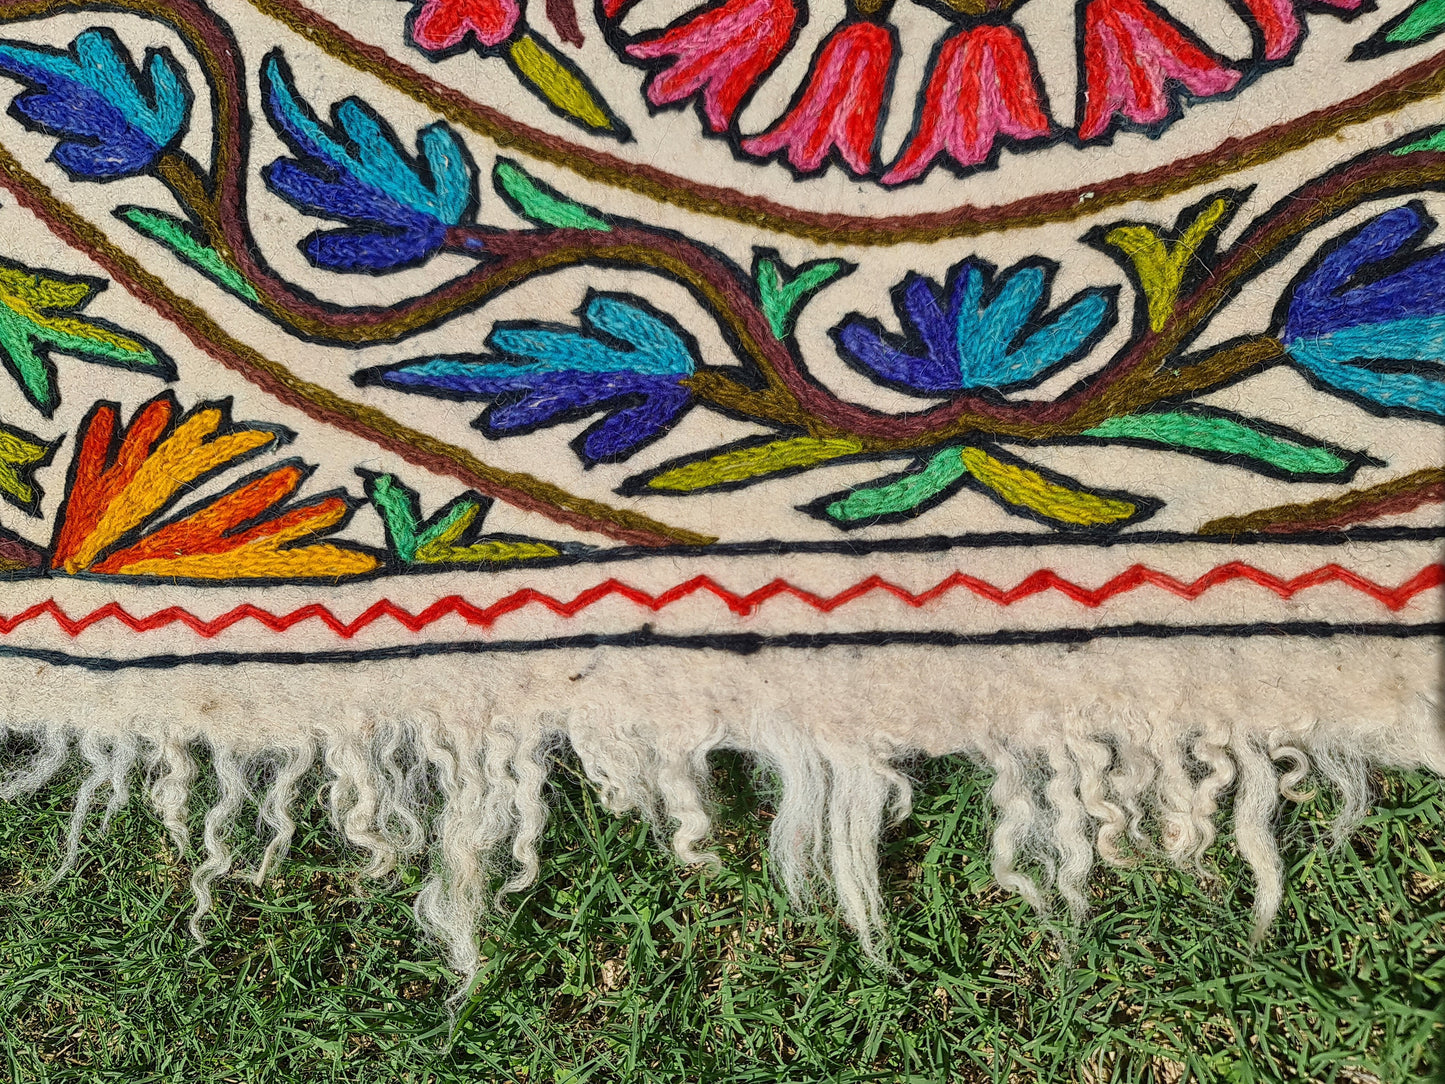 Großer Wollteppich – handgefilzt Namda 6x9ft | Boho Teppich - Indischer Bodenteppich | farbenfroher Stickfilzteppich aus Kaschmir | gefilzte Wolle 7x10